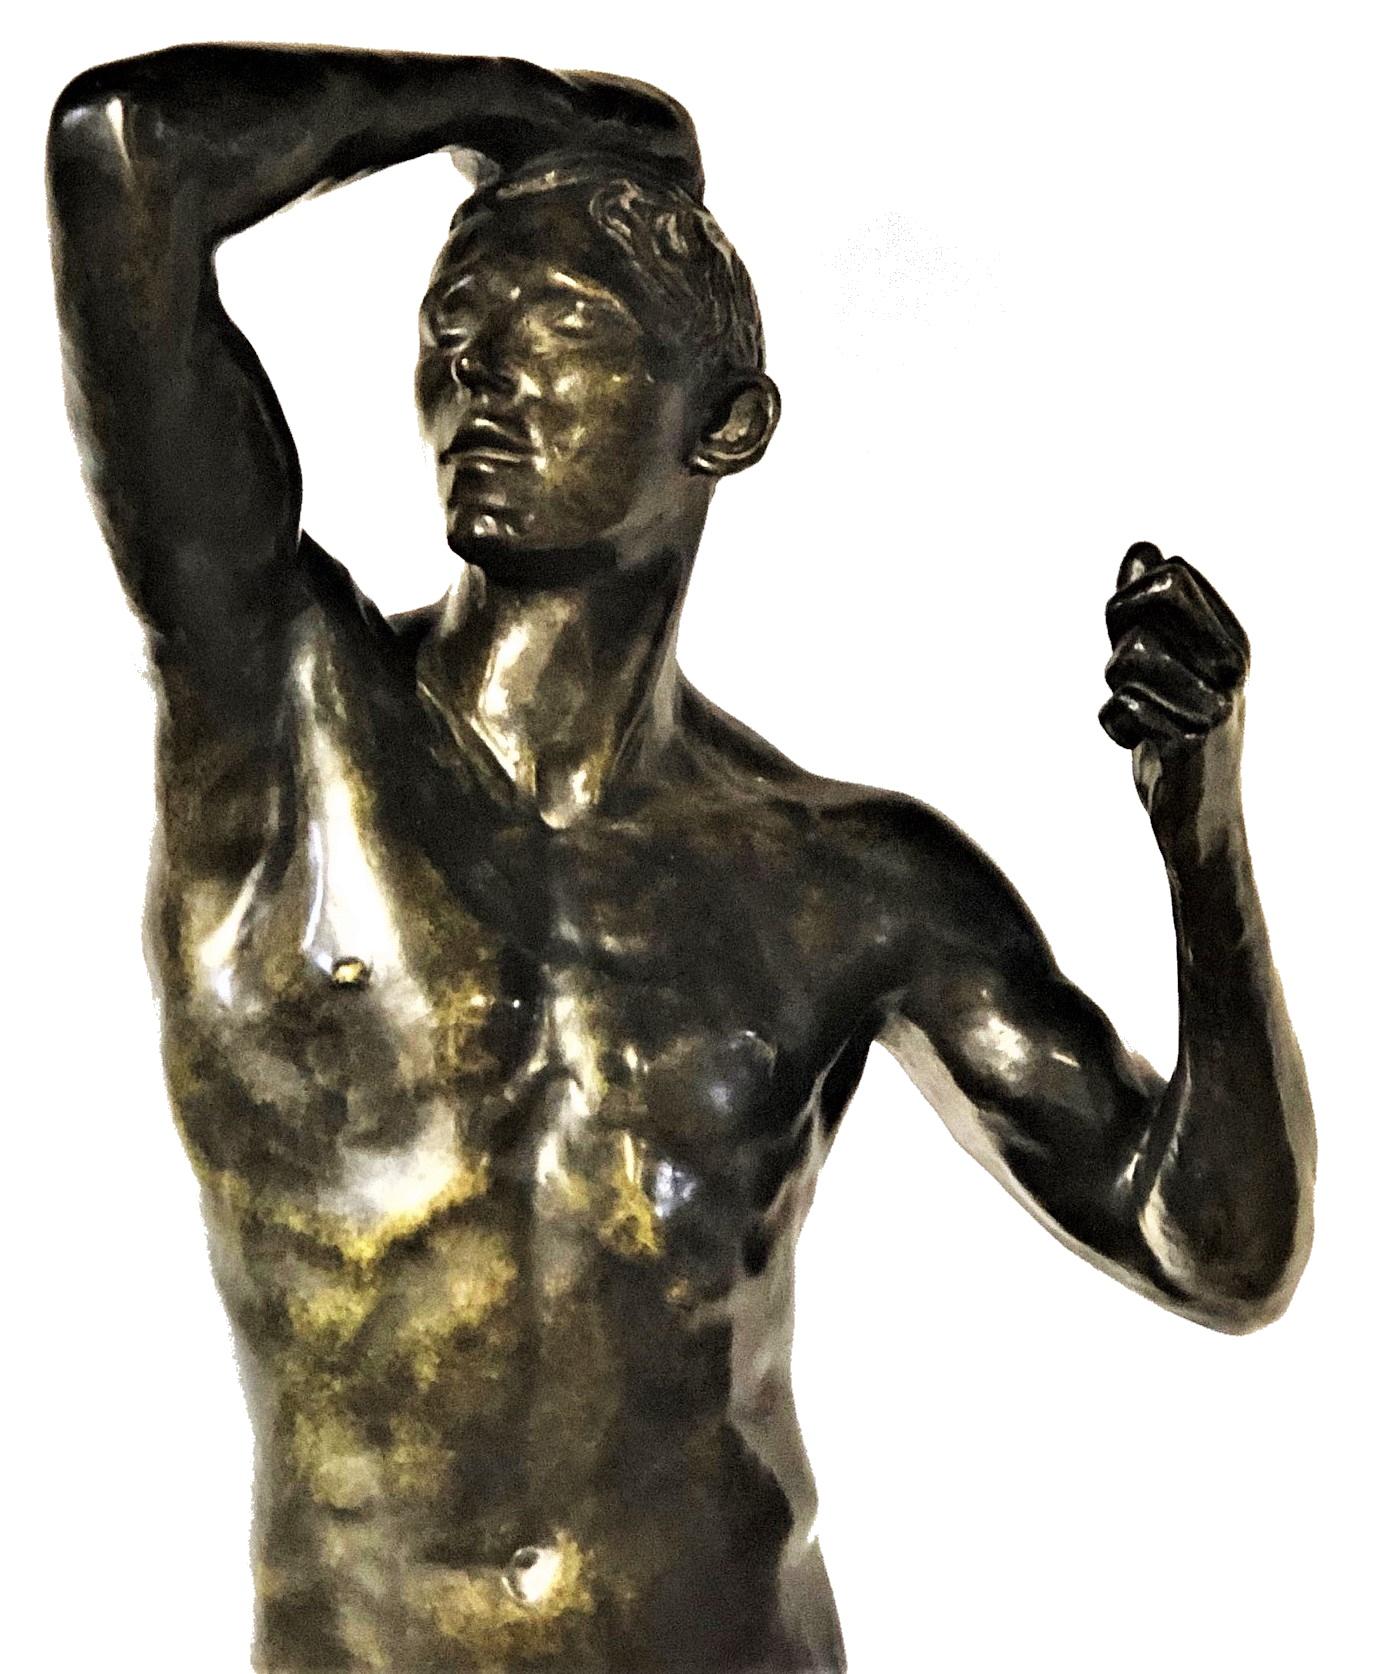 Auguste Rodin
NO AGE
Sculpture en bronze patiné refondue
XXème siècle

À PROPOS DE L'ŒUVRE D'ART
L'Age d'airain, sculpture phare de Rodin, a provoqué un scandale critique en raison de son naturalisme extrême et de l'ambiguïté de son sujet. Réalisée